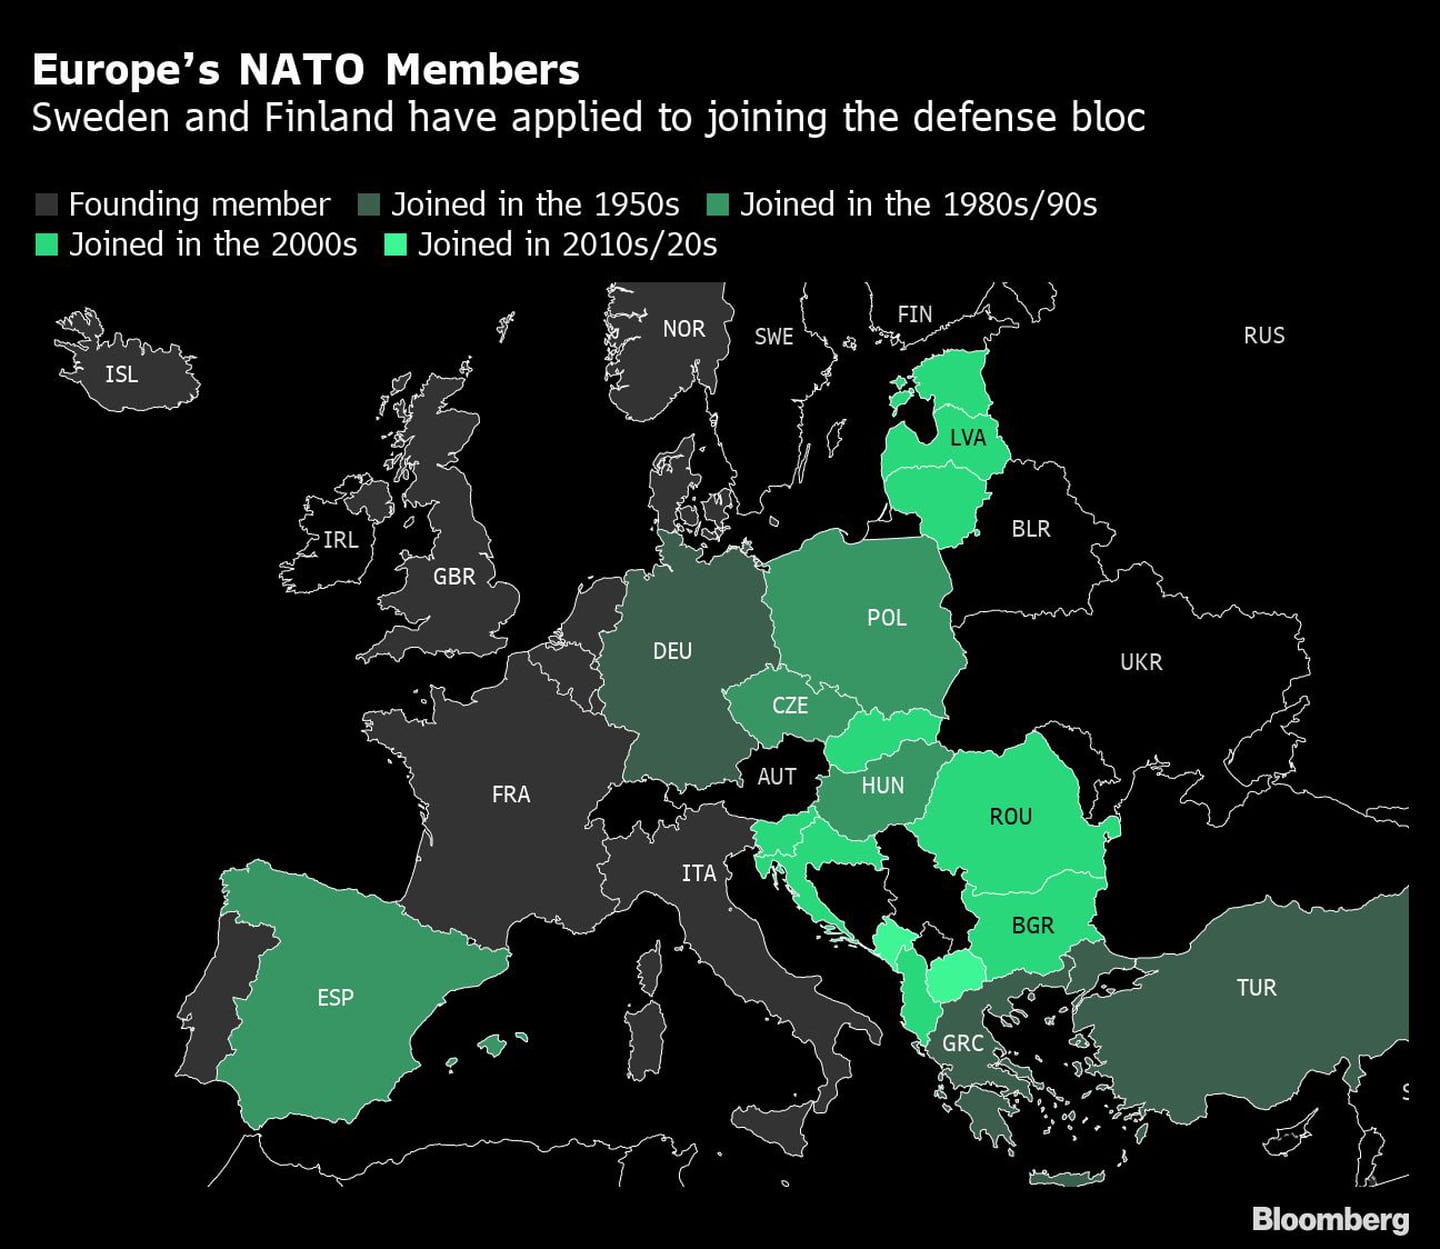 Los miembros europeos de la OTAN
Suecia y Finlandia han solicitado su ingreso en el bloque de defensa
Gris: Miembro fundador
Tonos de verde oscuro a claro: Se unió en la década de 1950, Se unió en la década de 1980/90, Se unió en la década de 2000, Se unió en la década de 2010/20dfd